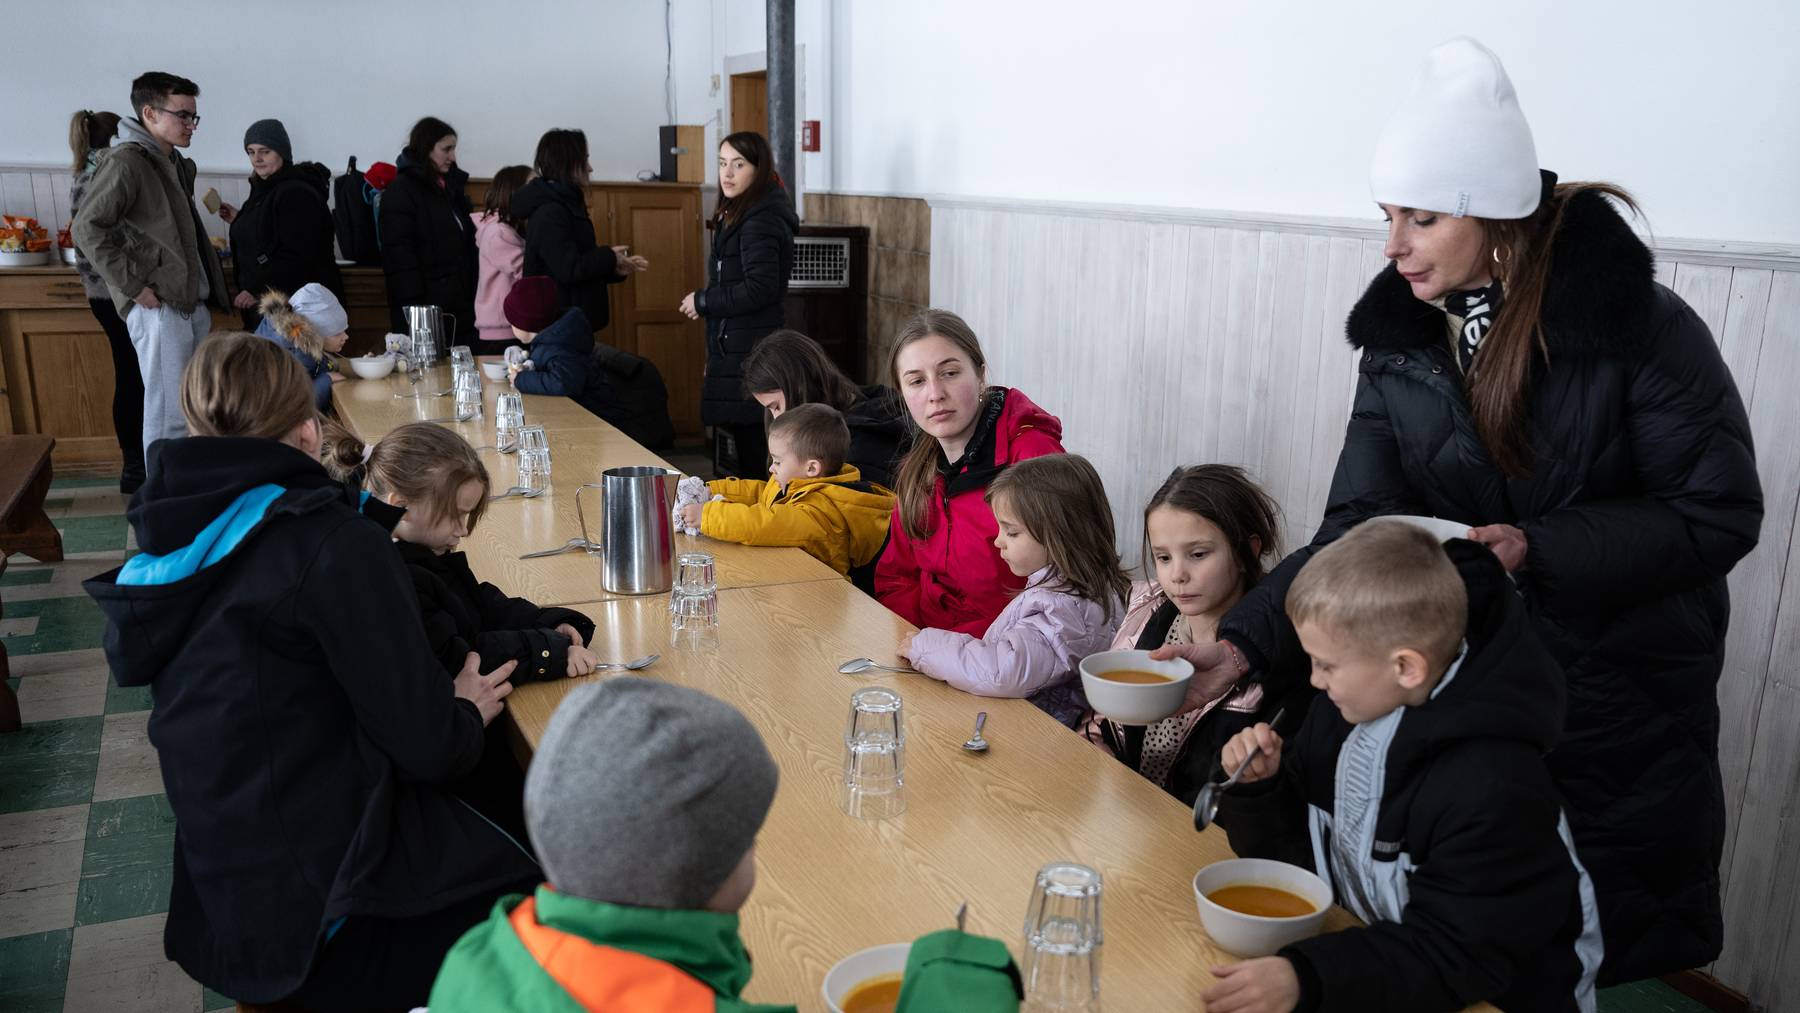 Ukrainische Kinder erhalten eine warme Mahlzeit in einem Pfadizentrum. (Archivbild)